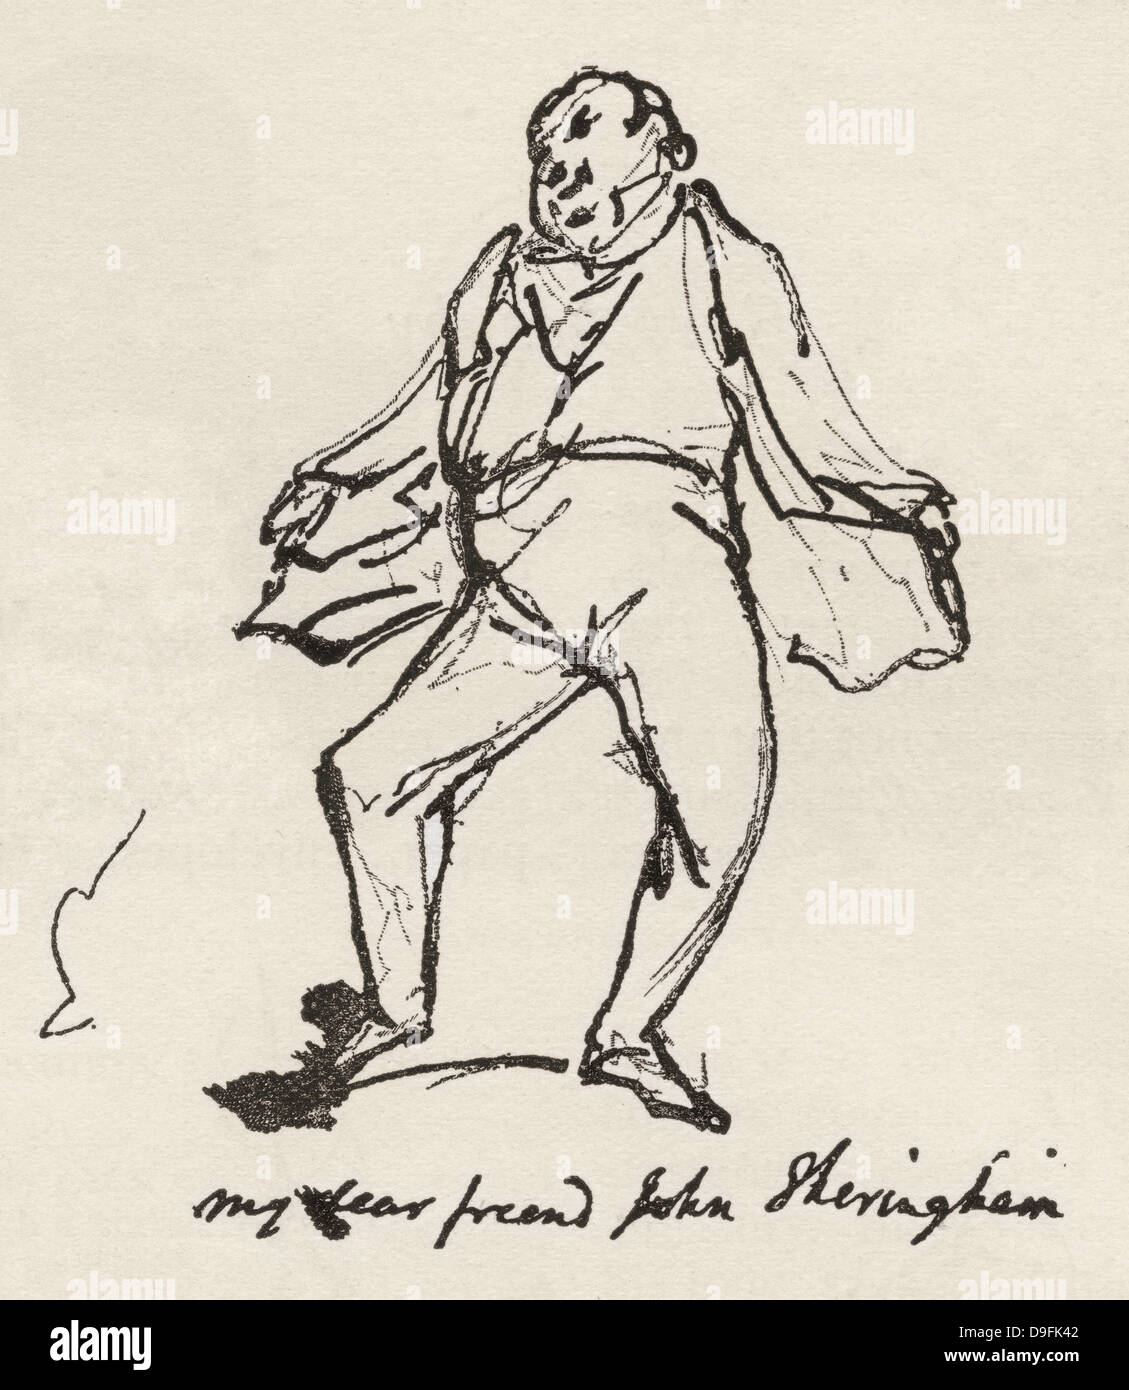 Un boceto en lápiz y tinta por George Cruikshank de su amigo el Sr. John Sheringham. Foto de stock